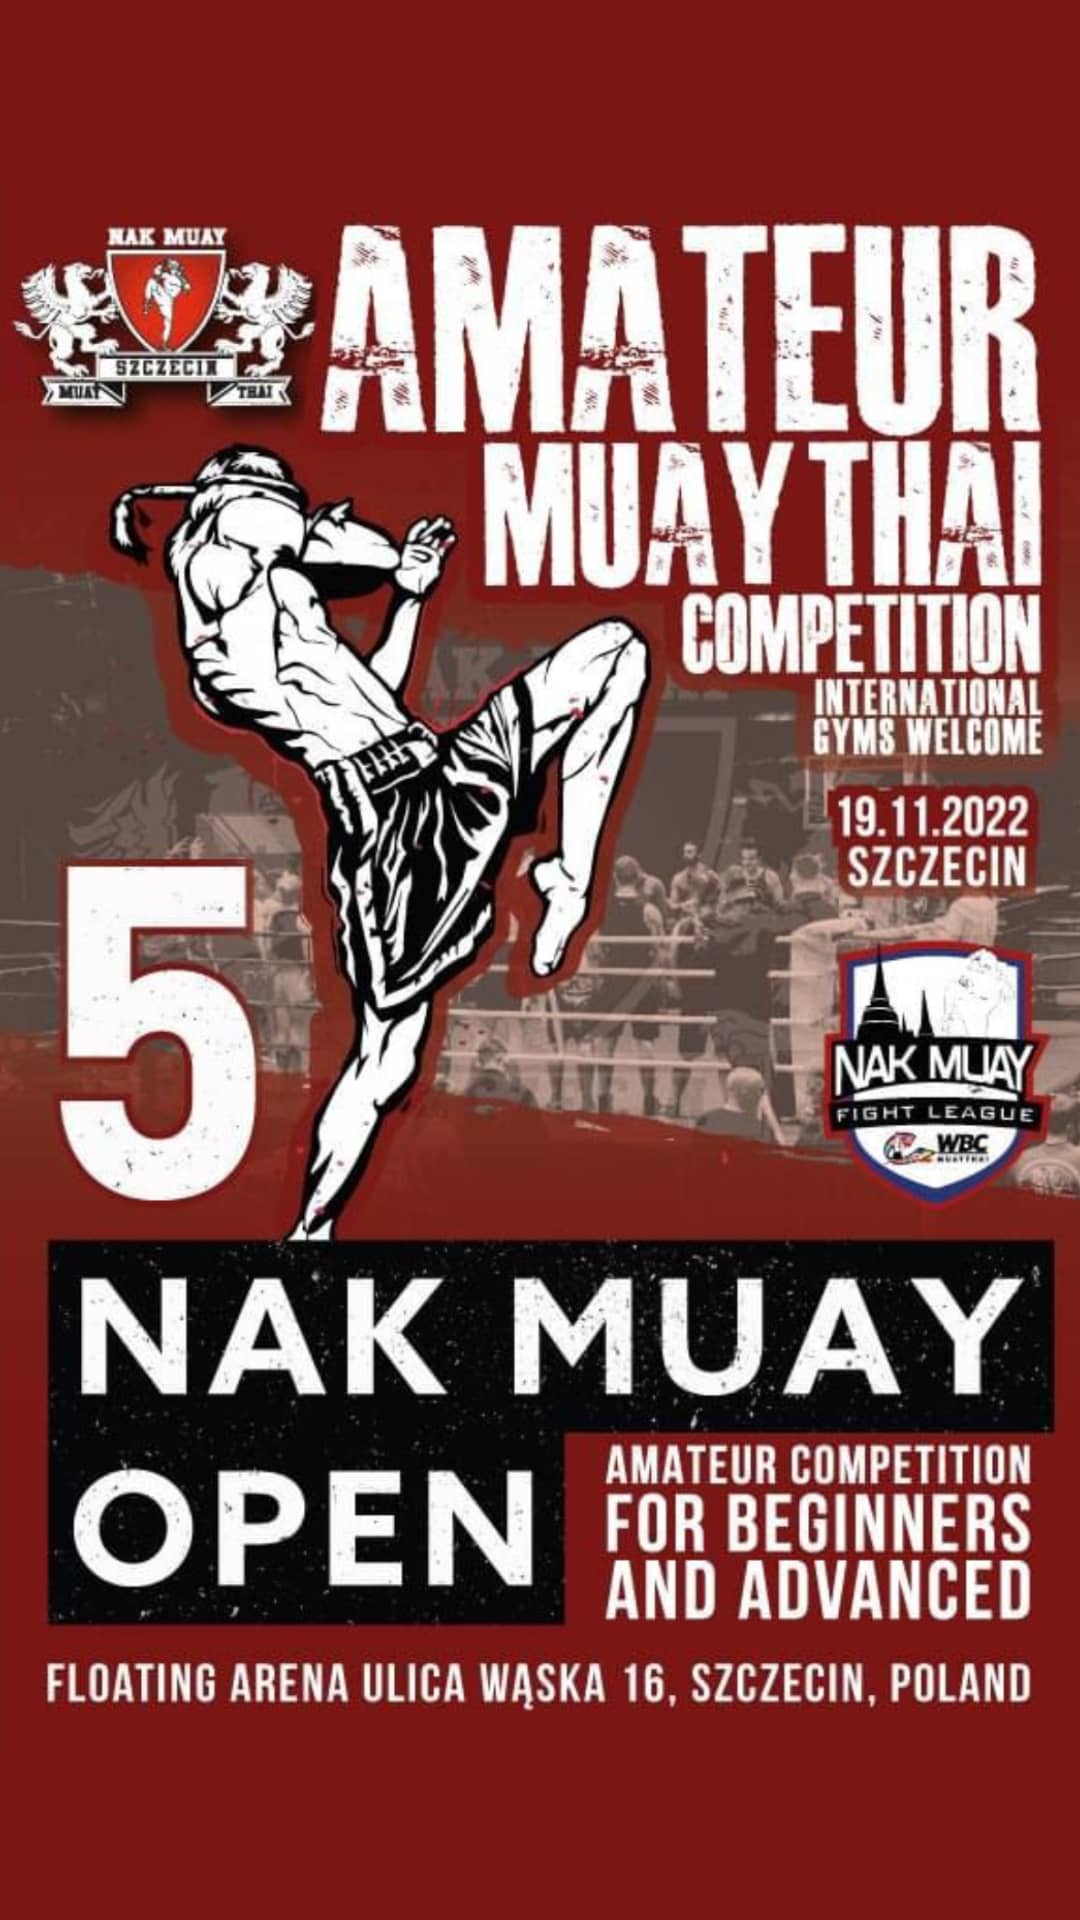 Nak Muay Fight League in Polen Vol. 5